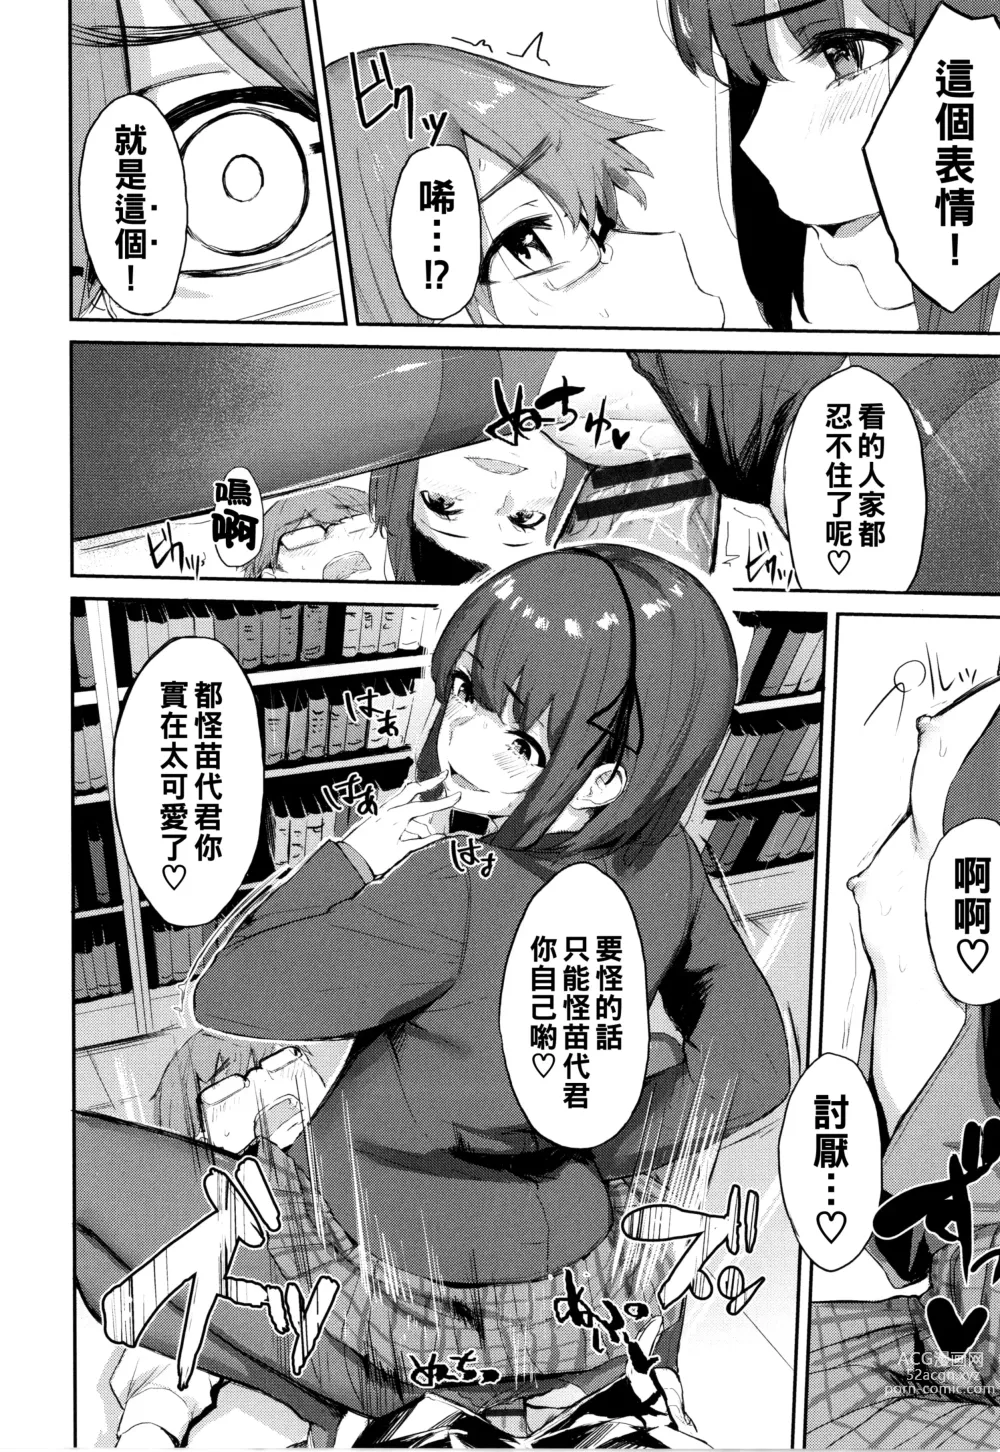 Page 16 of manga Toshoshitsu no Himitsu - Library Secrets